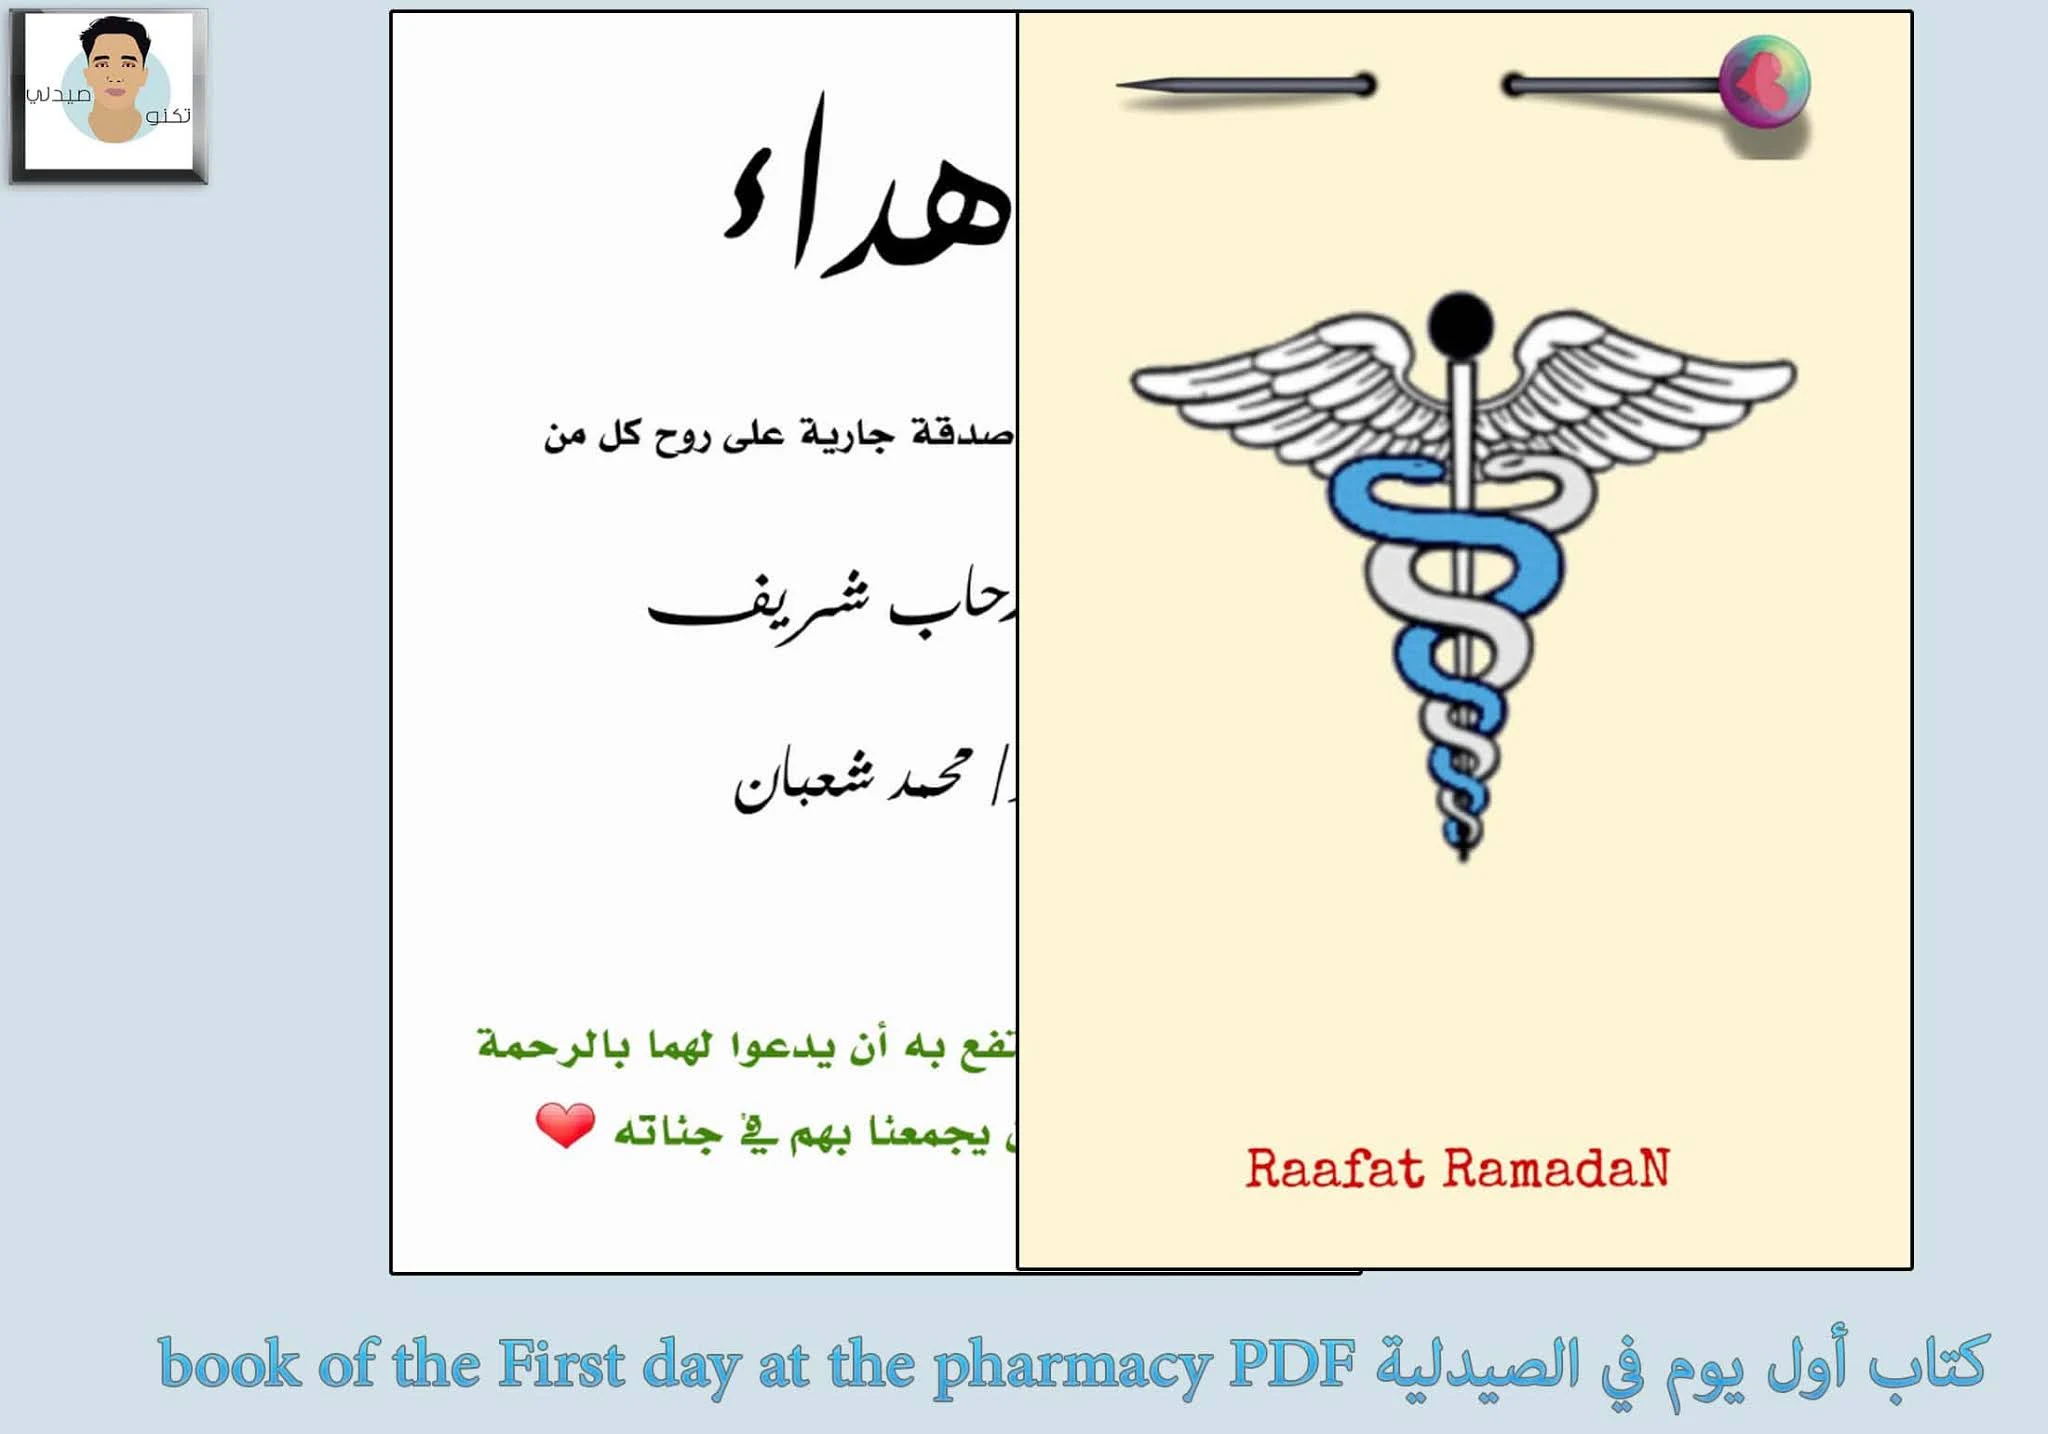 كتاب أول يوم في الصيدلية book of the First day at the pharmacy PDF